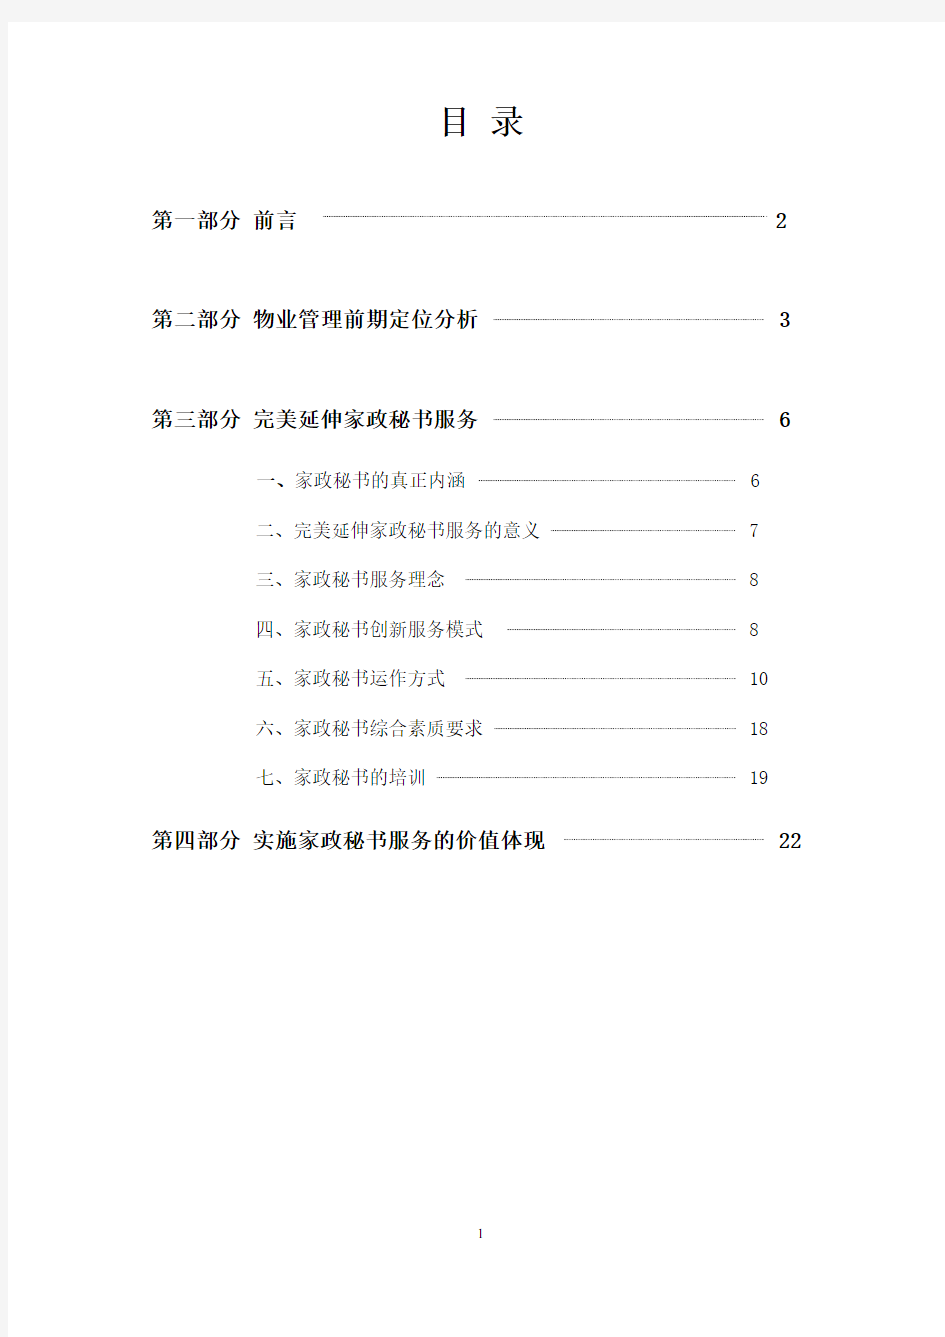 北京星河湾物业服务方案(高力国际)